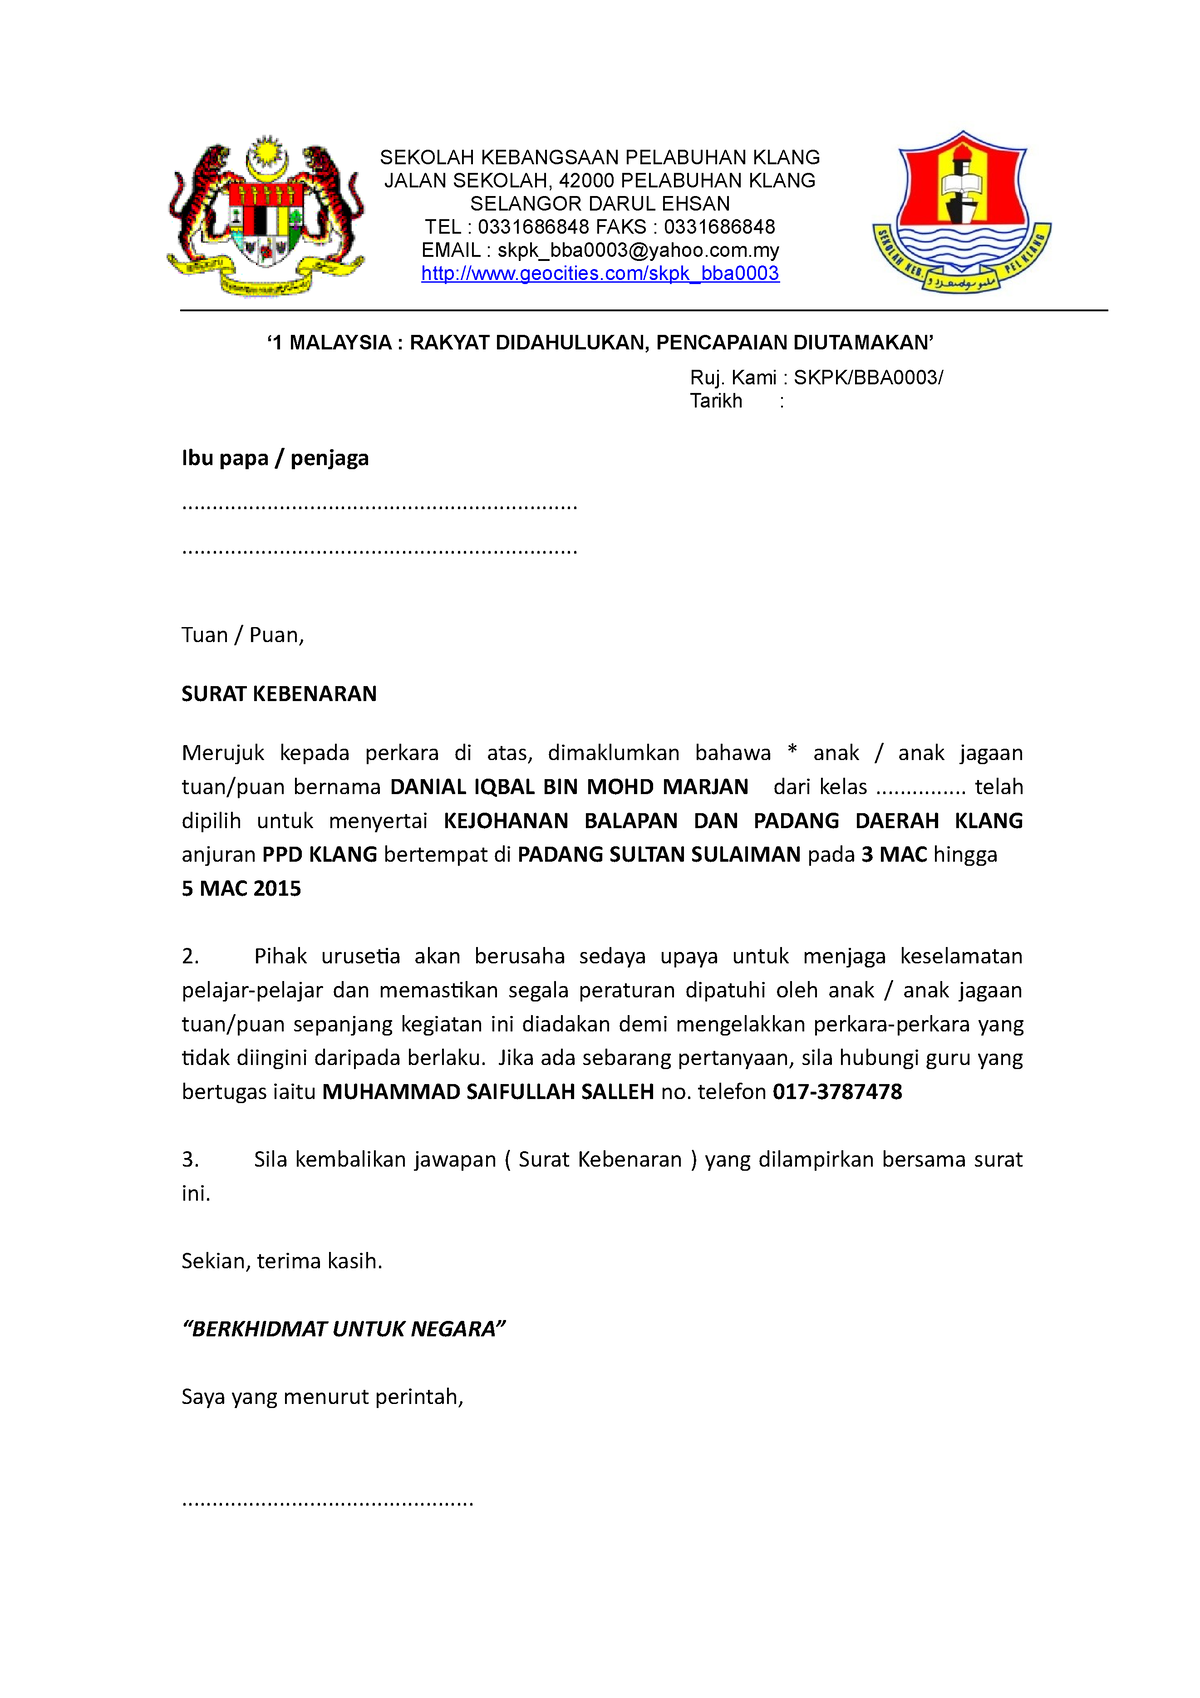 Contoh Surat Kebenaran Ibu Bapa Sekolah Kebangsaan Pelabuhan Klang Jalan Sekolah 42000 